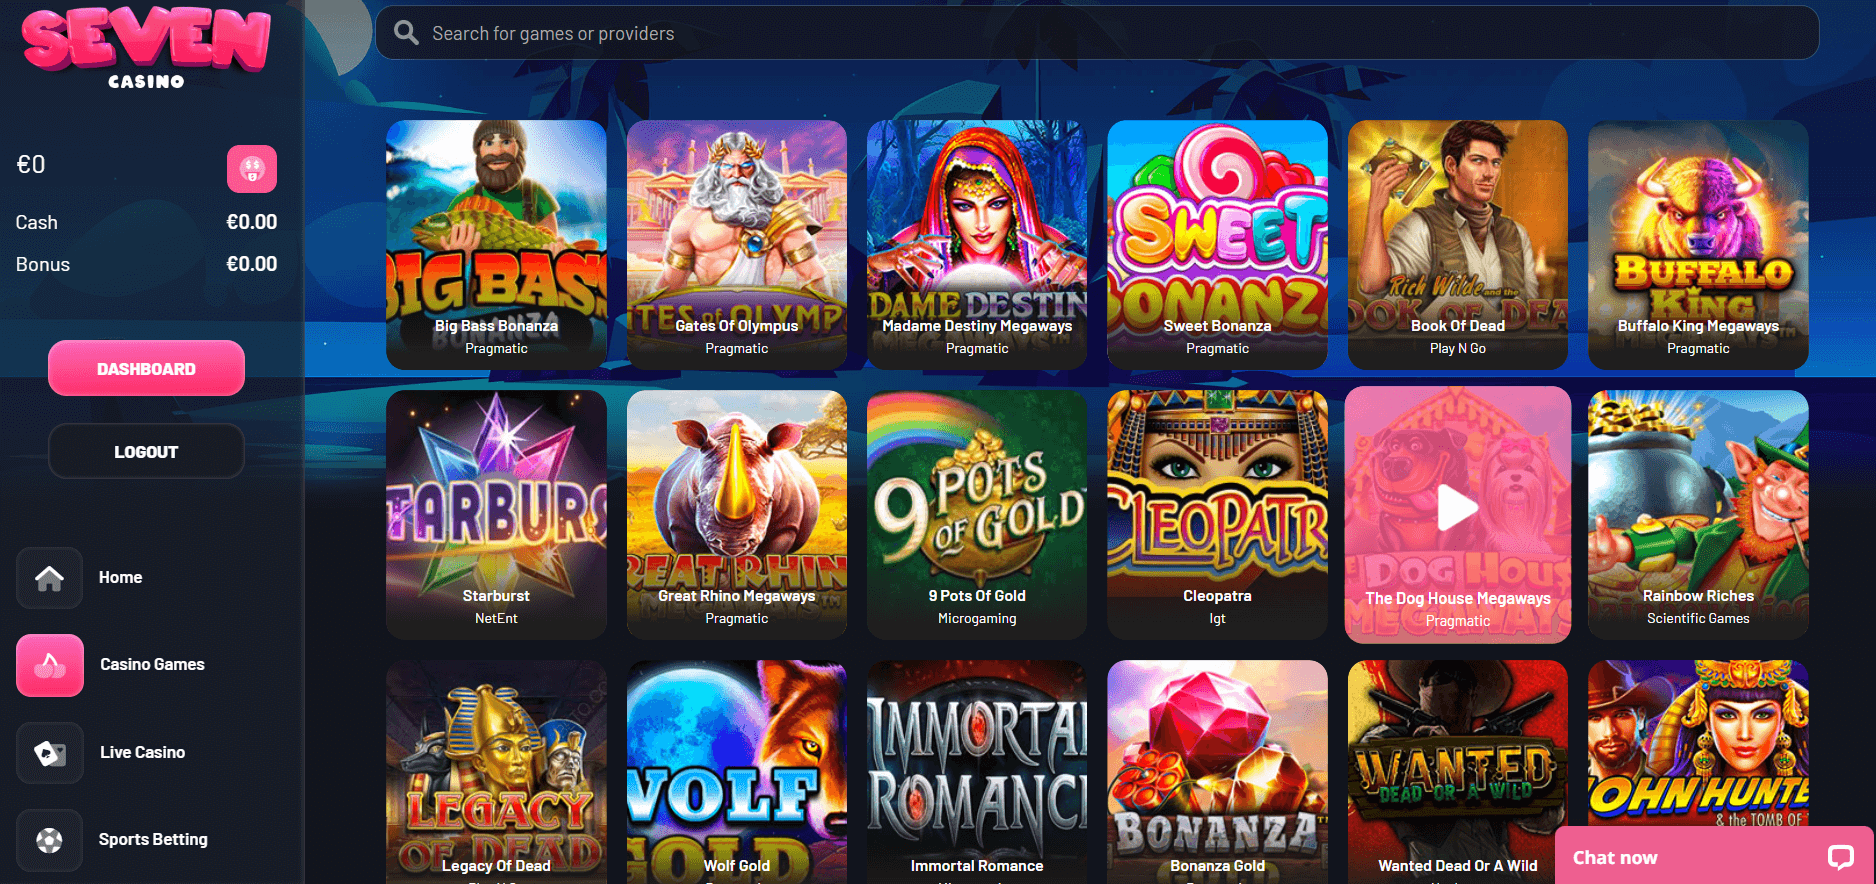 Seven Casino online games